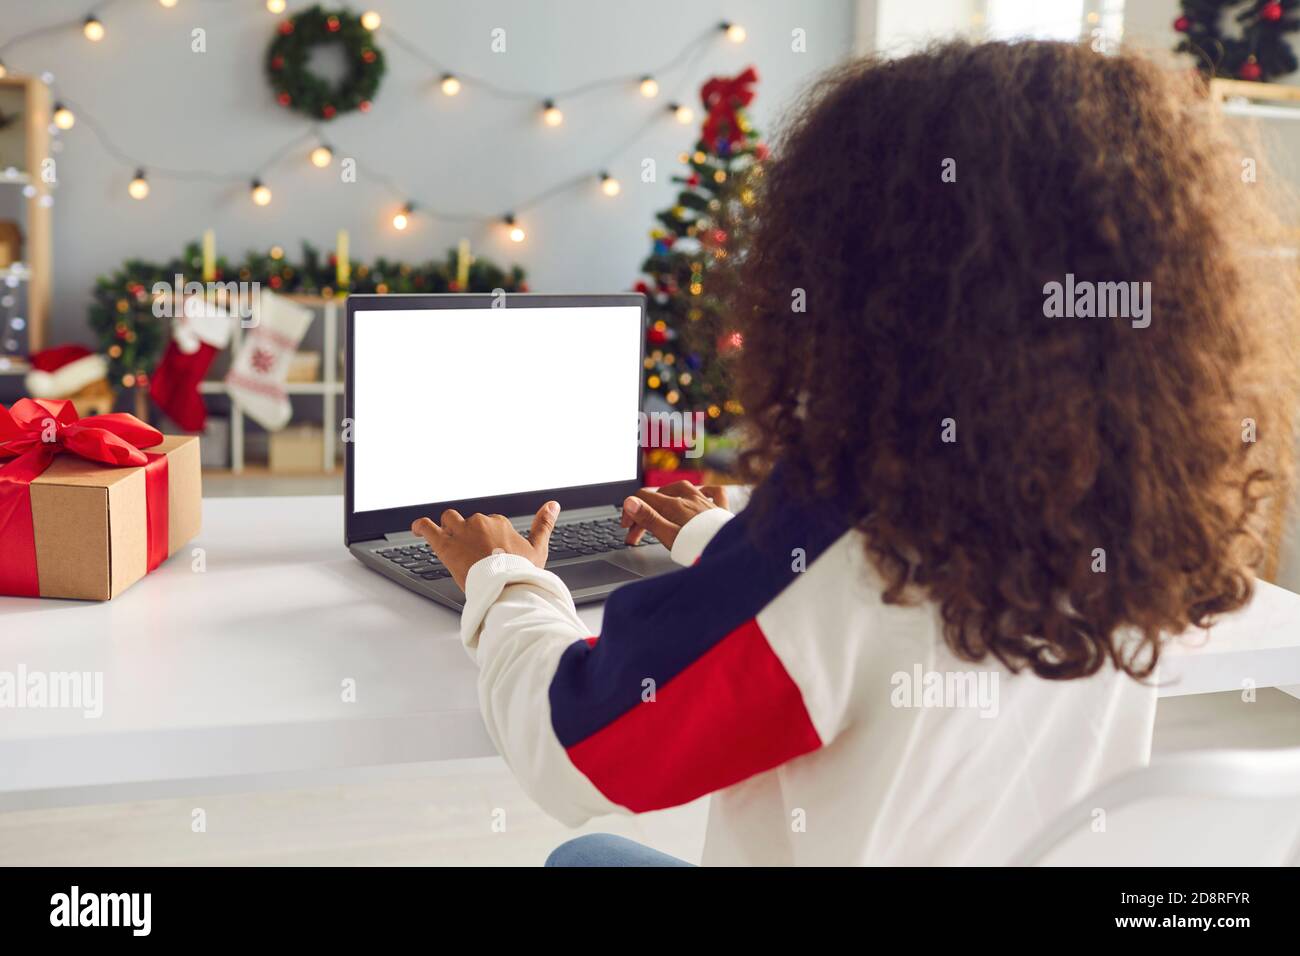 Jeune fille maurique assise à une table devant un ordinateur portable dans une pièce avec des décorations de Noël. Banque D'Images